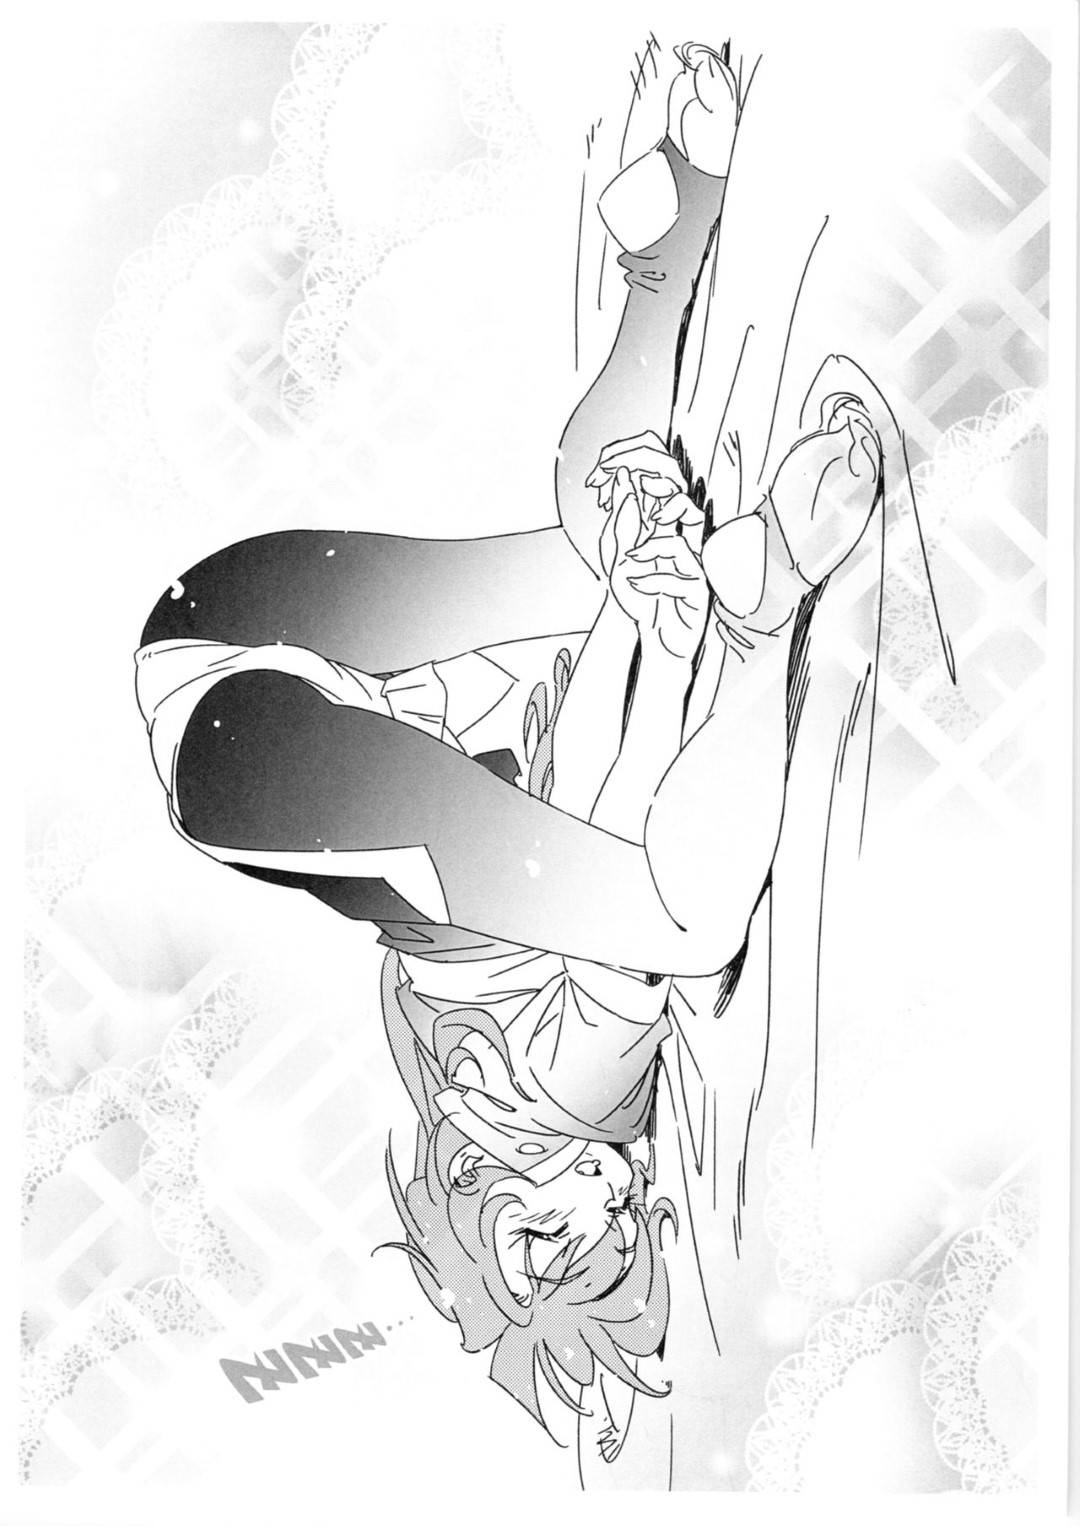 【エロ漫画】スレイヤーズのリナ・インバースのエッチなパロディイラスト集。ストッキング姿で尻を突き出したリナの姿や、全裸姿や居眠りする様子、そしてお風呂上がりの様子など様々なシチュエーションでのリナのエッチな姿が描かれている。